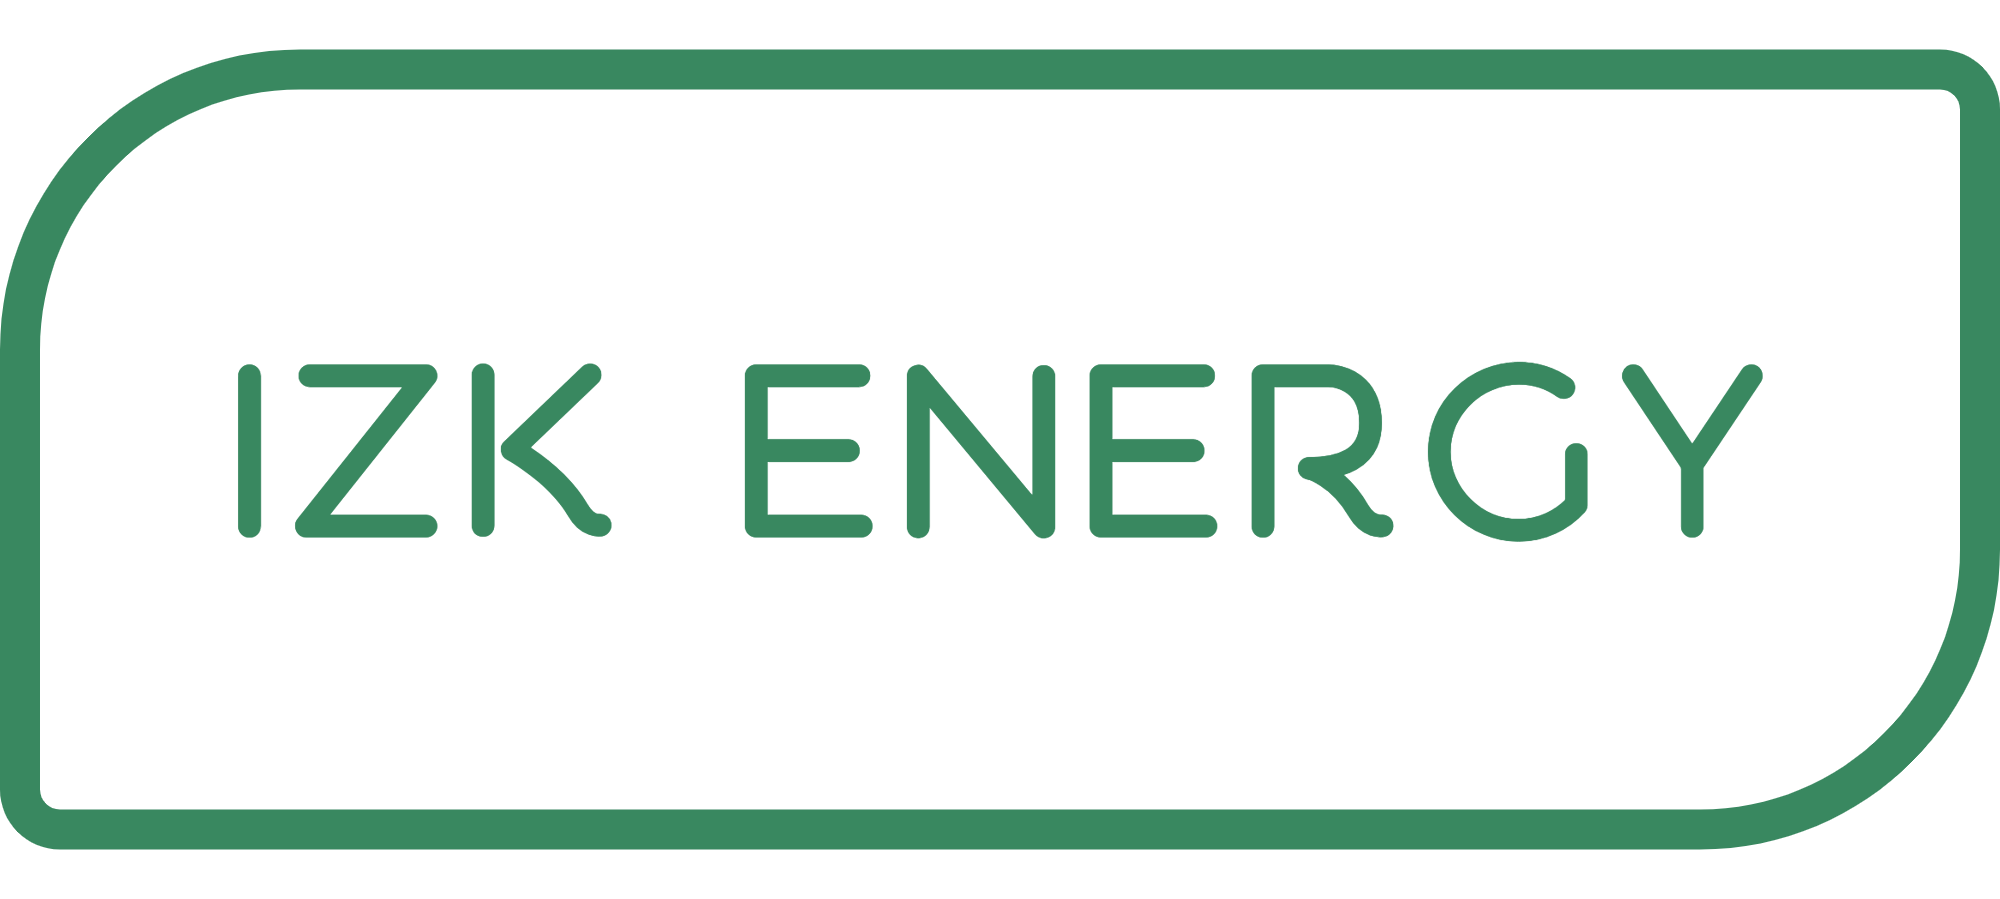 IZK Energy